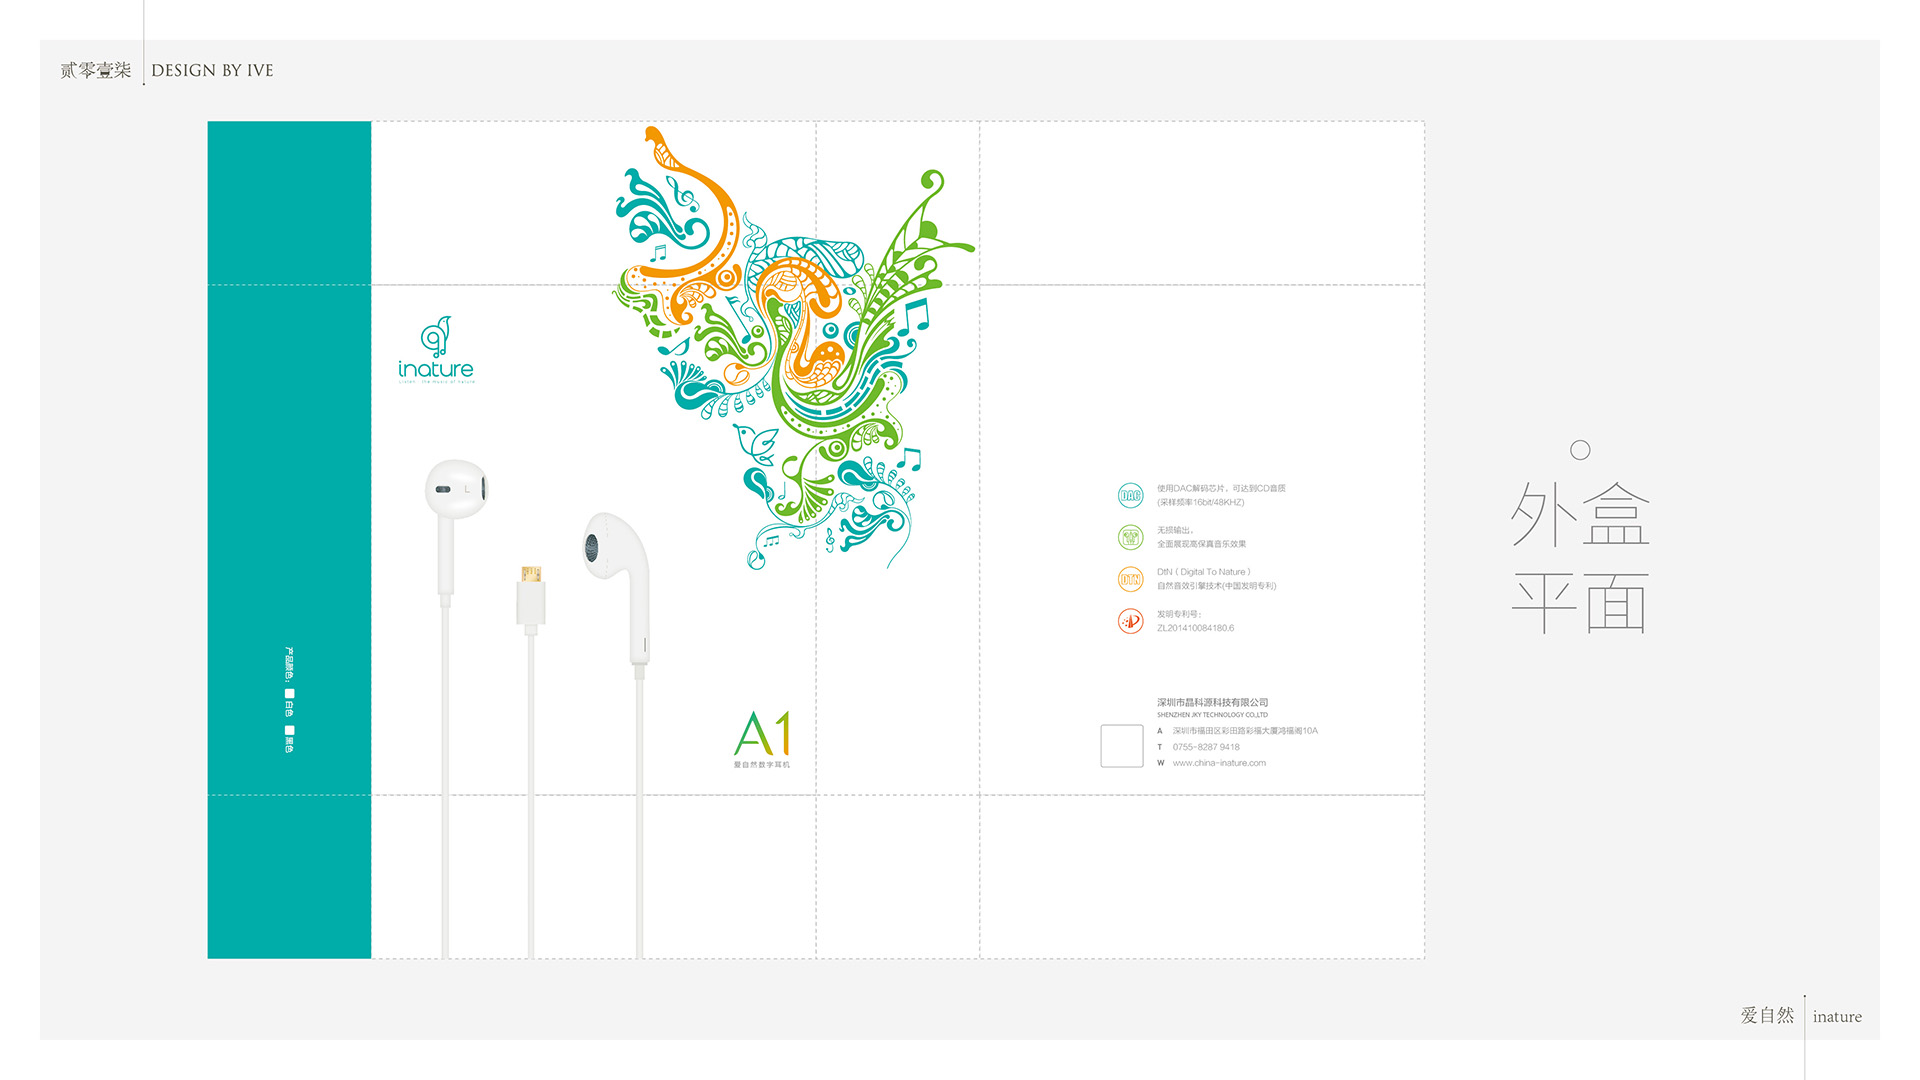 创意插画电子产品耳机包装设计案例